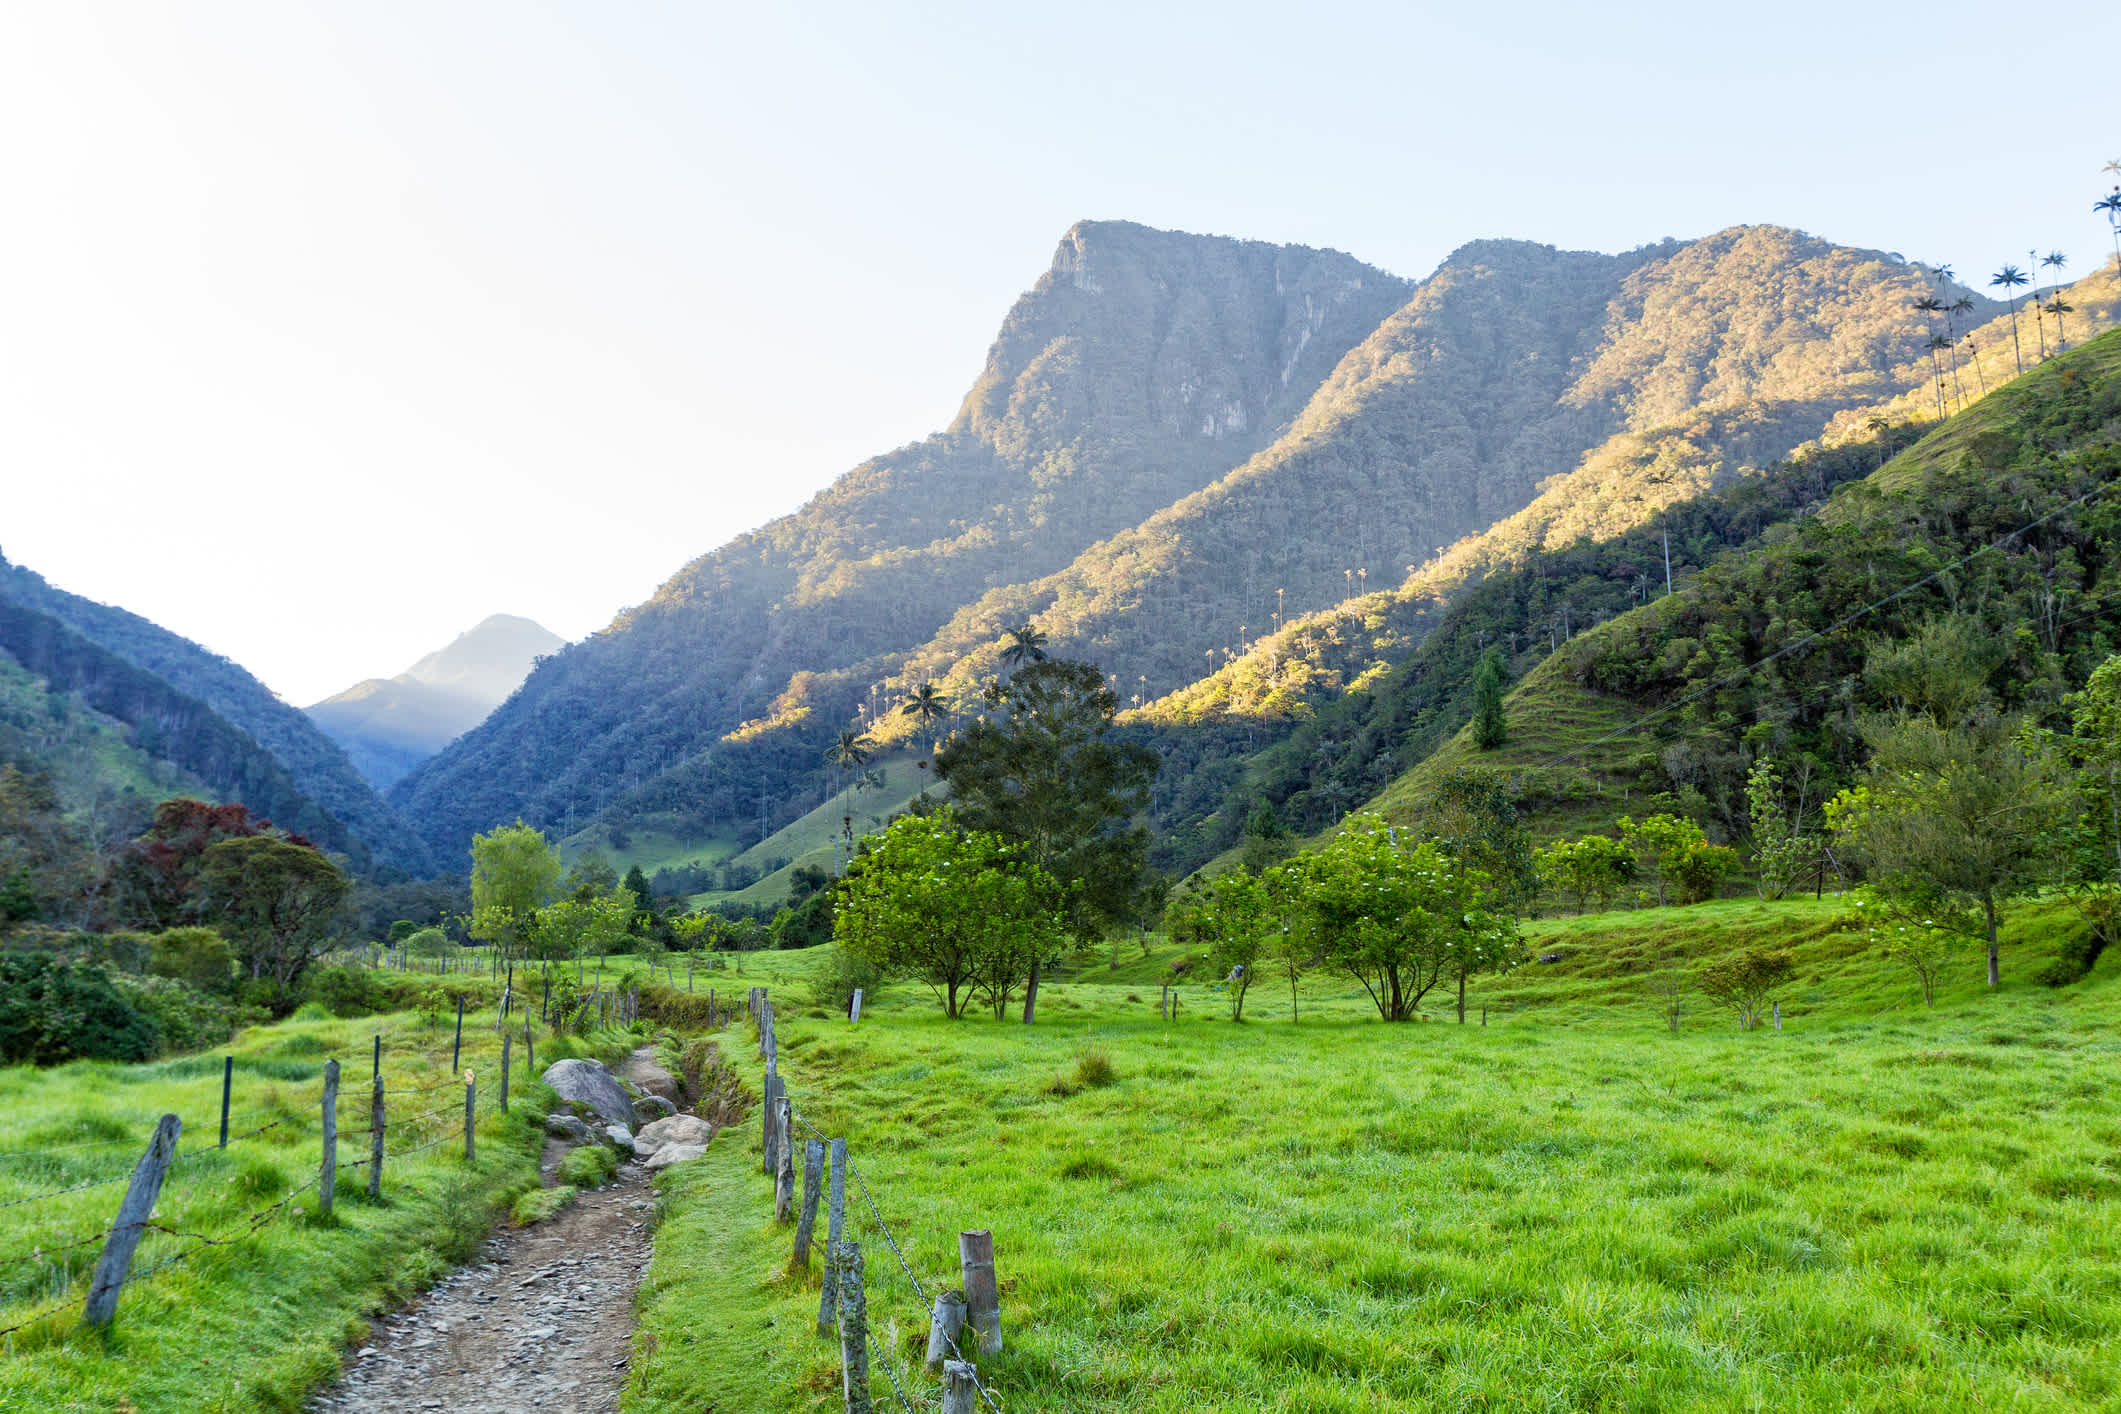 Sentier entouré de végétation qui mènent aux montagnes près de Salento, en Colombie.